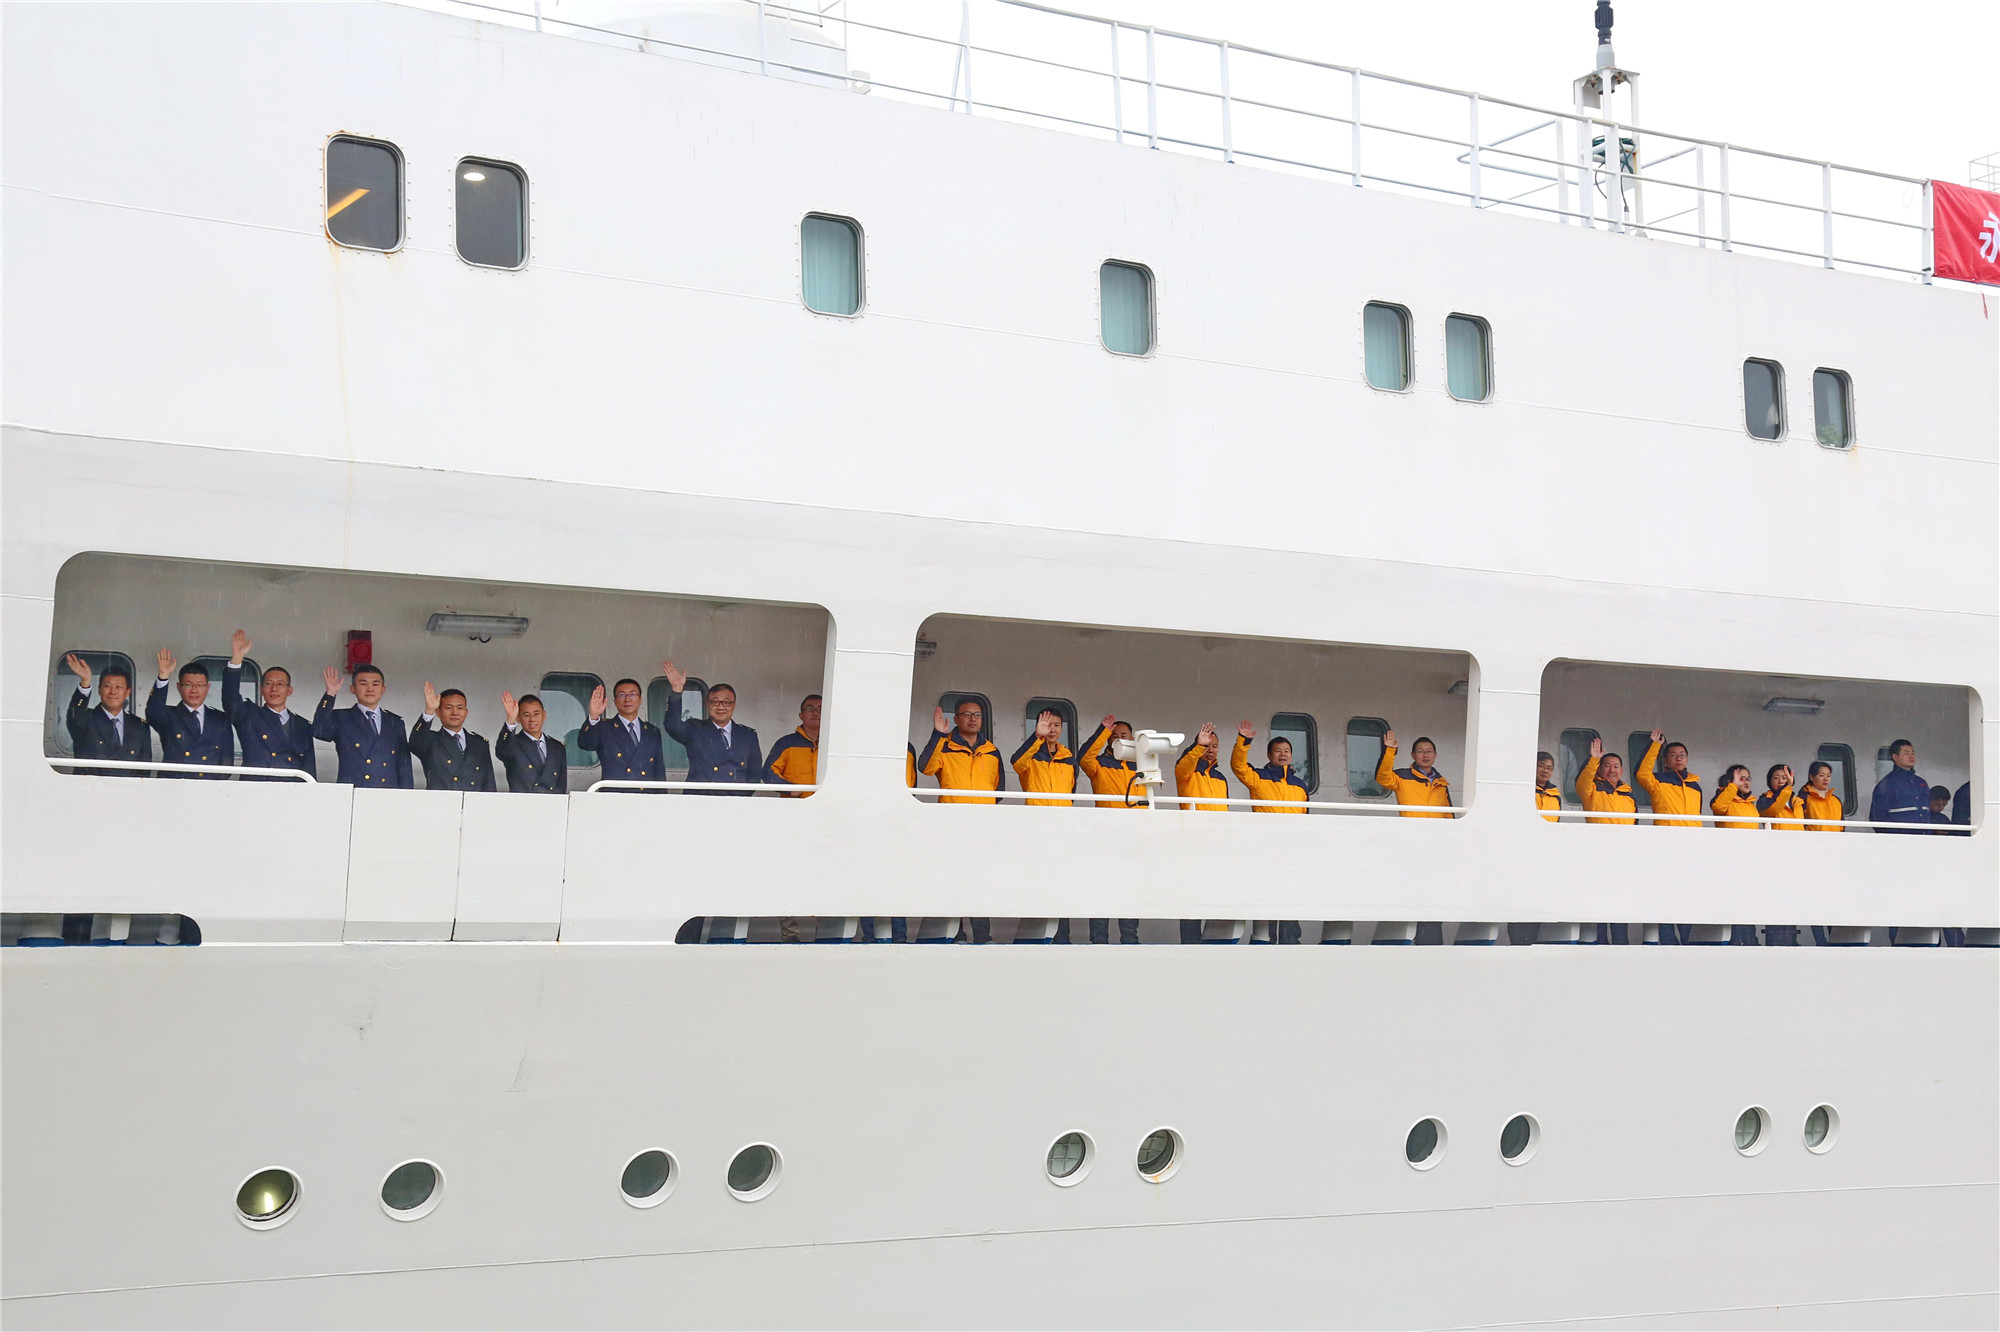 图片2—细雨霏霏，船员们在内舷甲板挥手作别，王哲摄.jpg